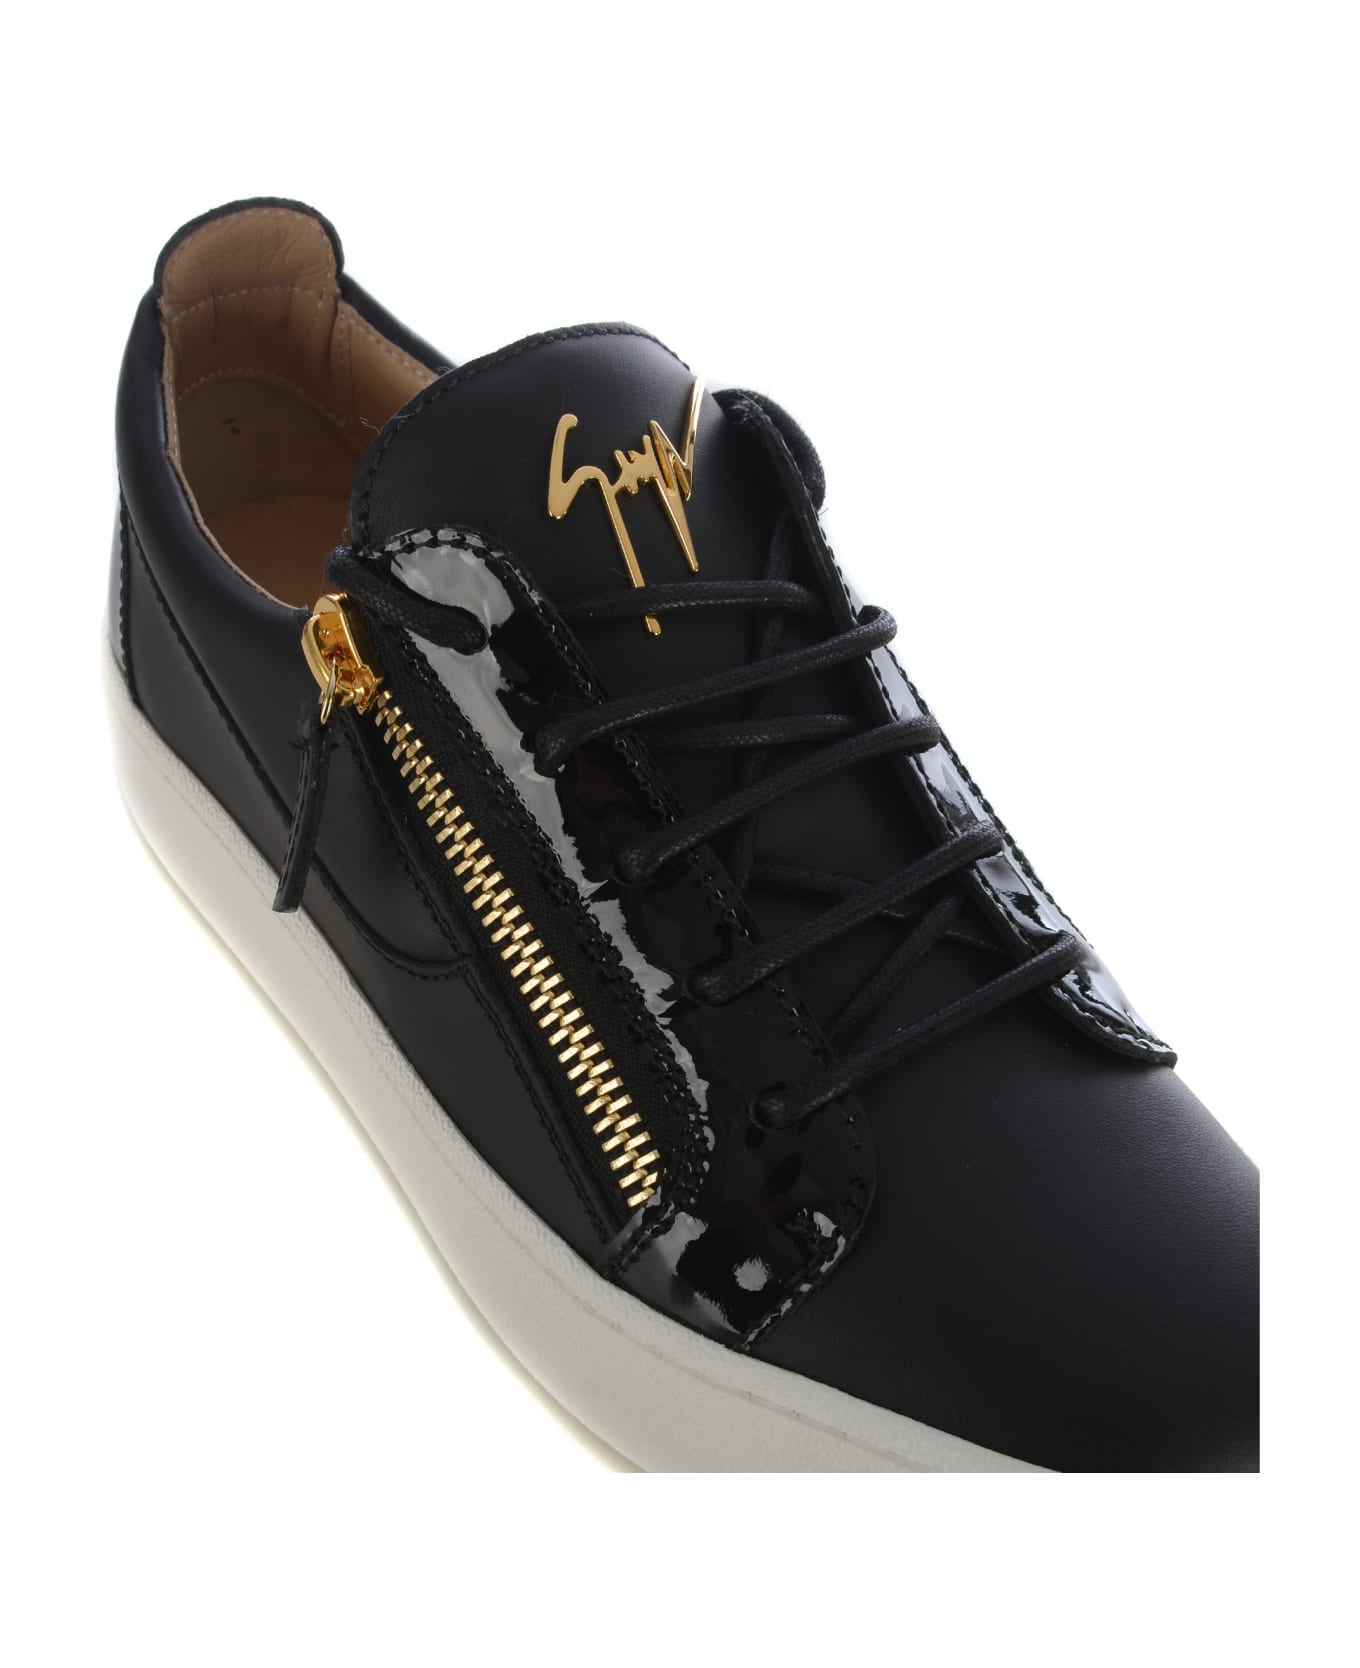 Giuseppe Zanotti Sneakers Giuseppe Zanotti "frankie" In Leather - Nero